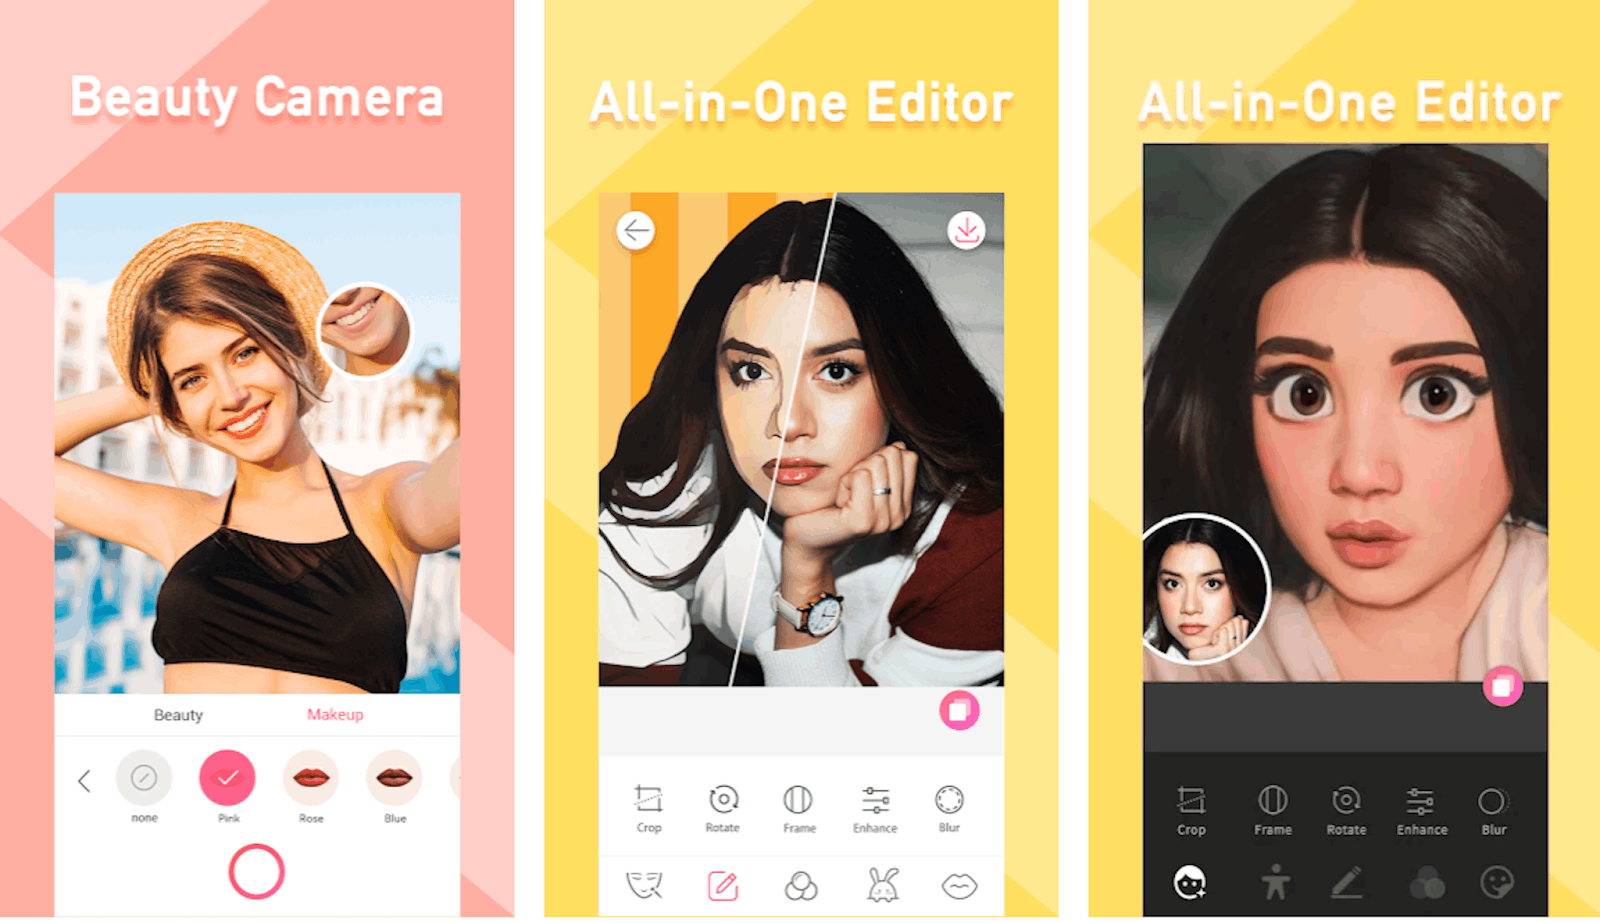 Sweet Selfie App - Beauty & Filters Photo Editor